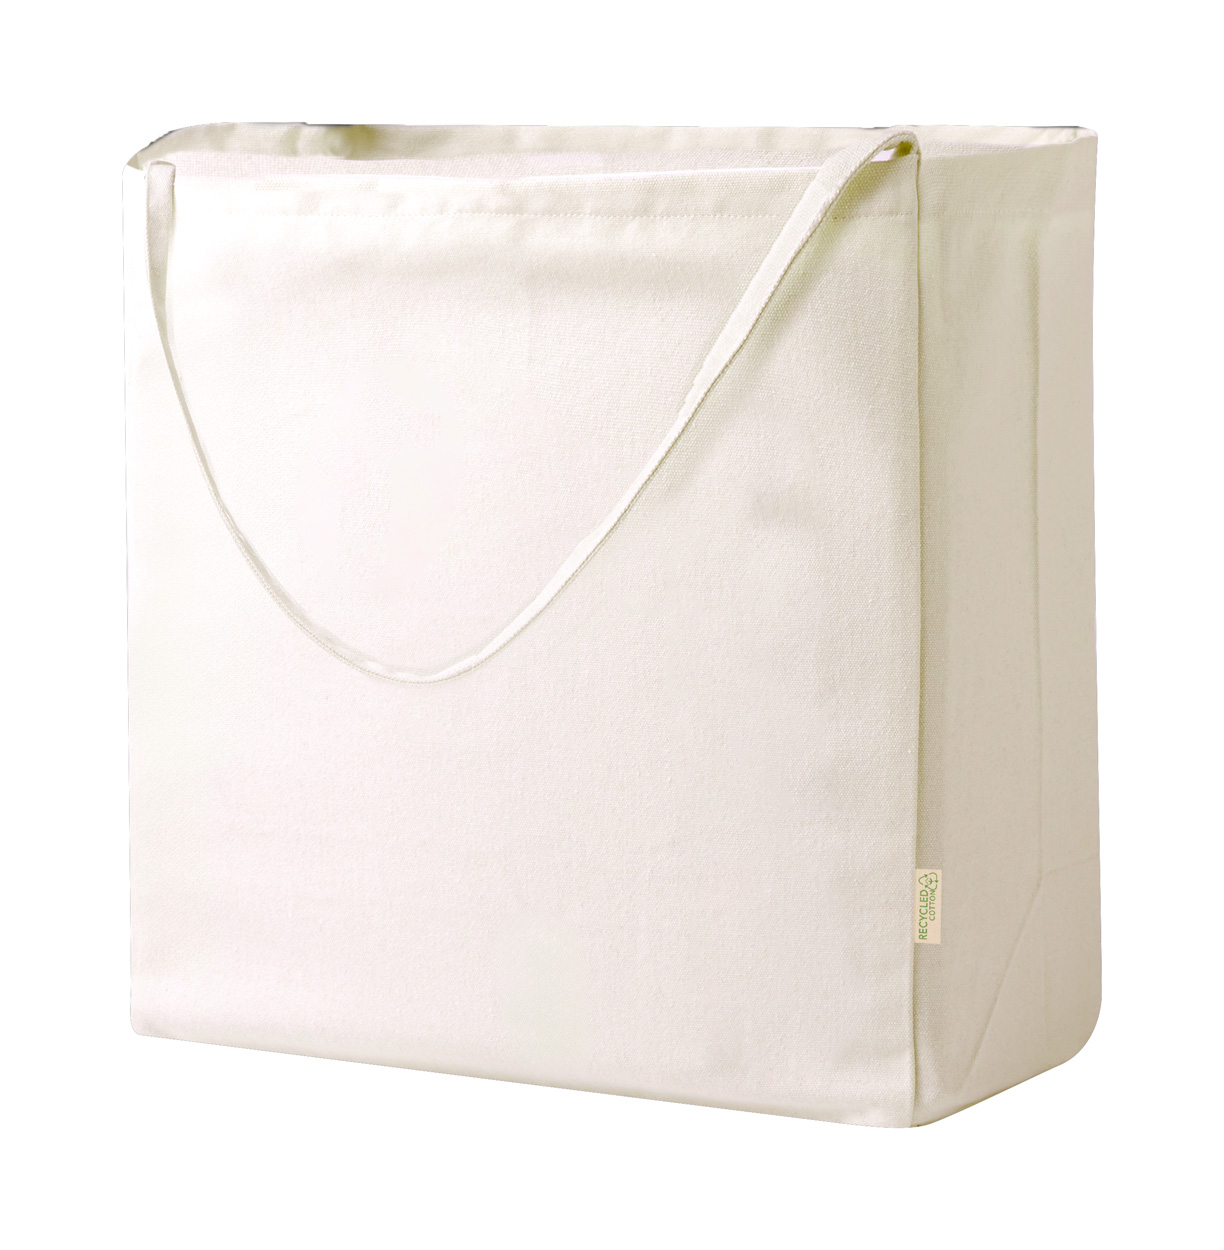 Japonic cotton shopping bag - beige